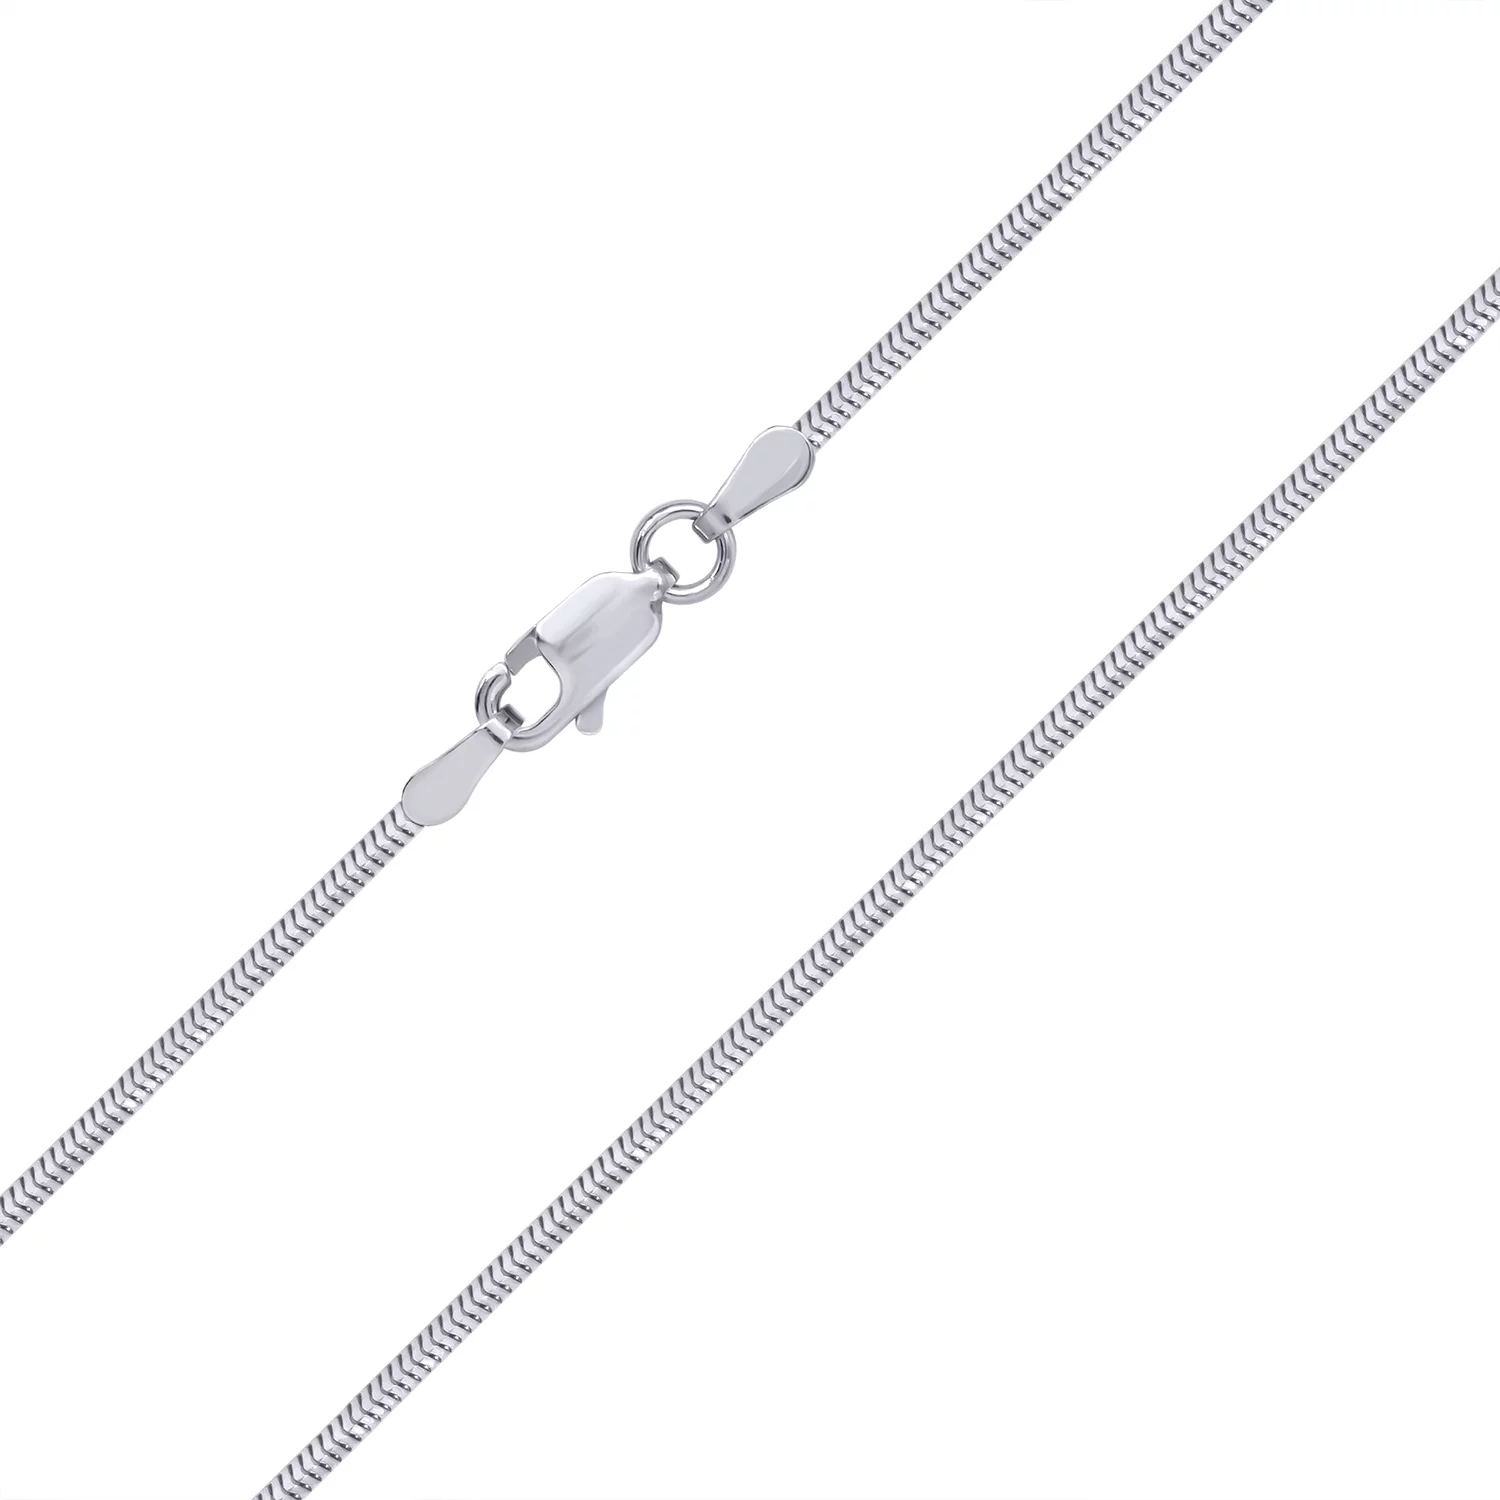 Серебряная цепочка плетение Снейк. Артикул 7508/930Р2/60: цена, отзывы, фото – купить в интернет-магазине AURUM